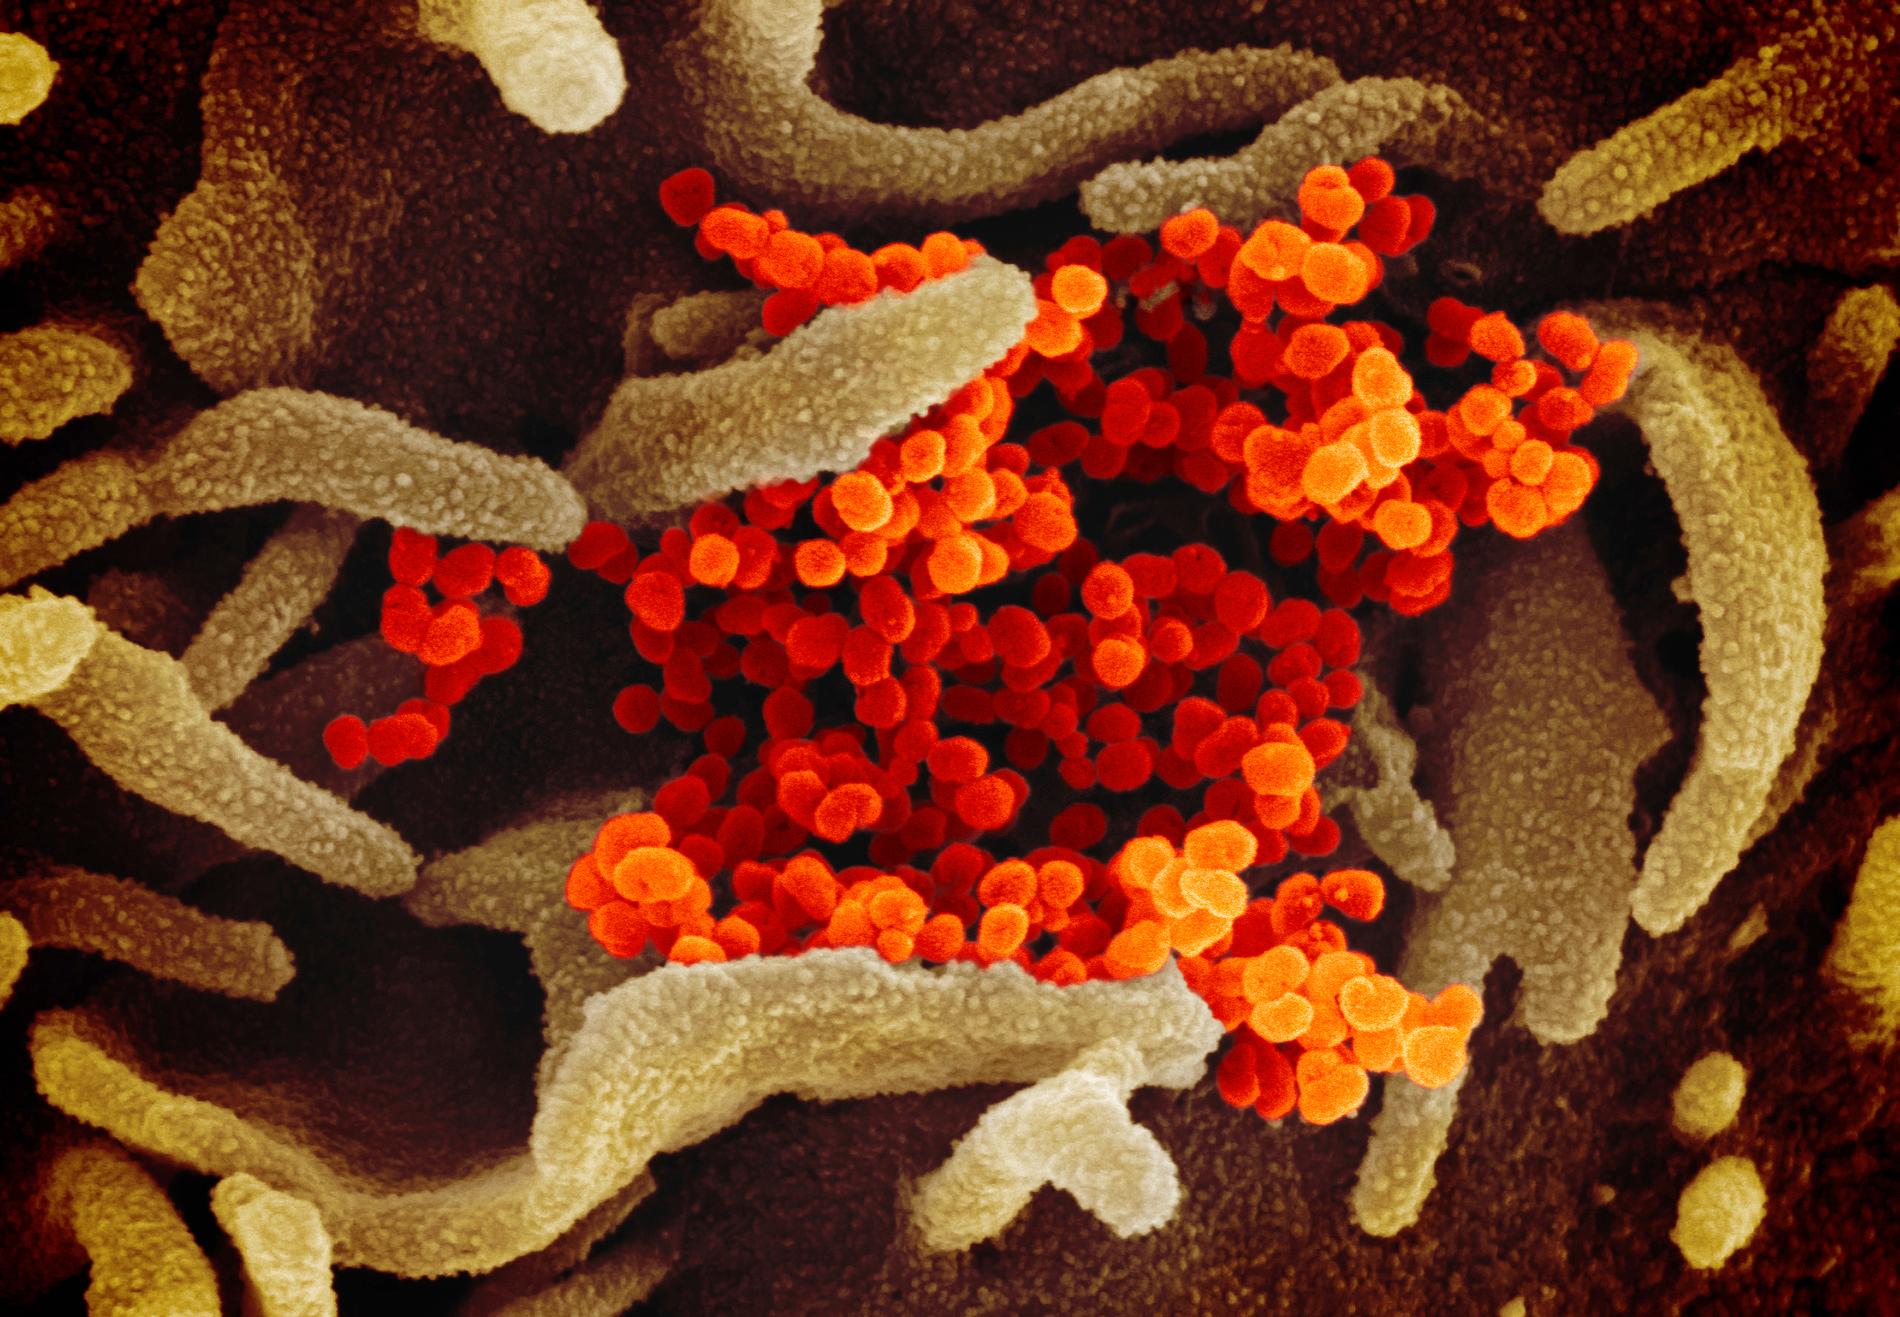 I provrörsförsök har det nya coronaviruset visat sig sårbart för klorokin, den verksamma substansen i malarialäkemedel. Men försök på människor visar risk för allvarliga biverkningar. Arkivbild.